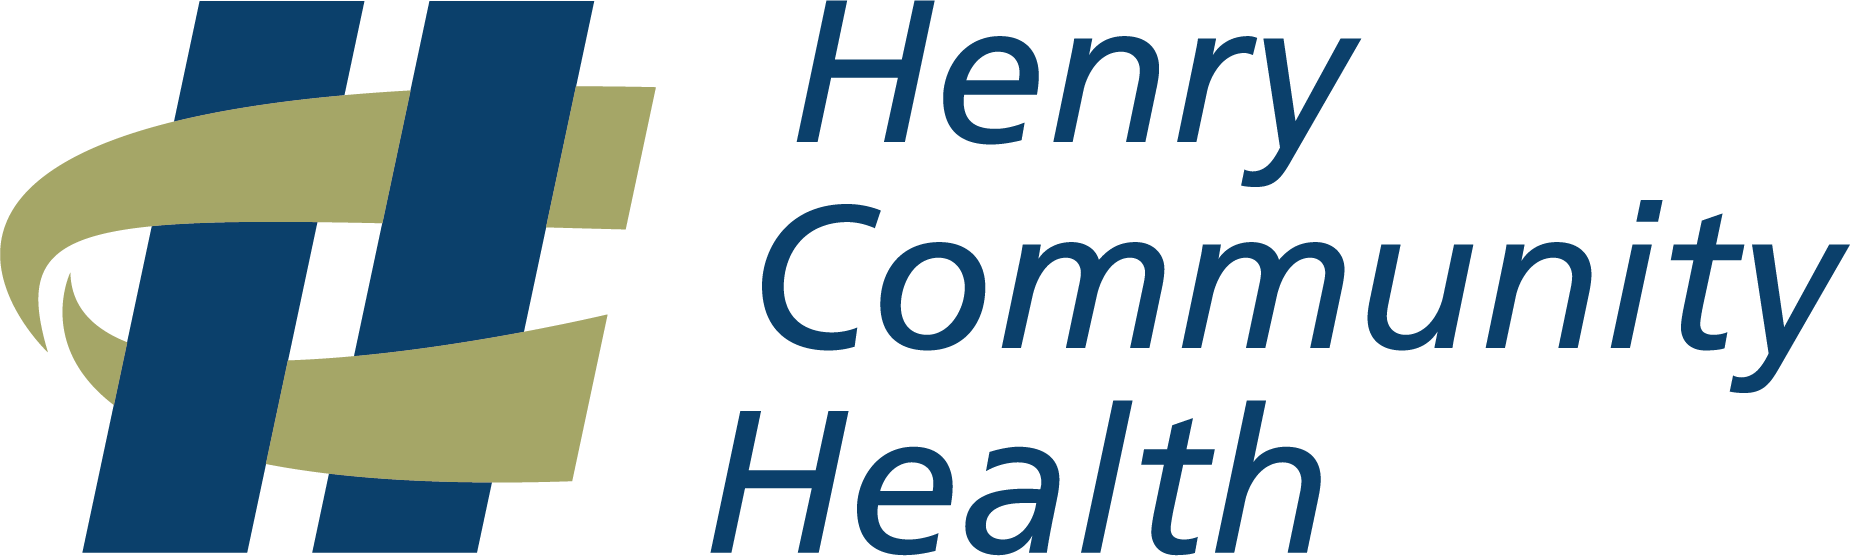 Henry Community Health - Henry Community Health Indiana (1850x556)